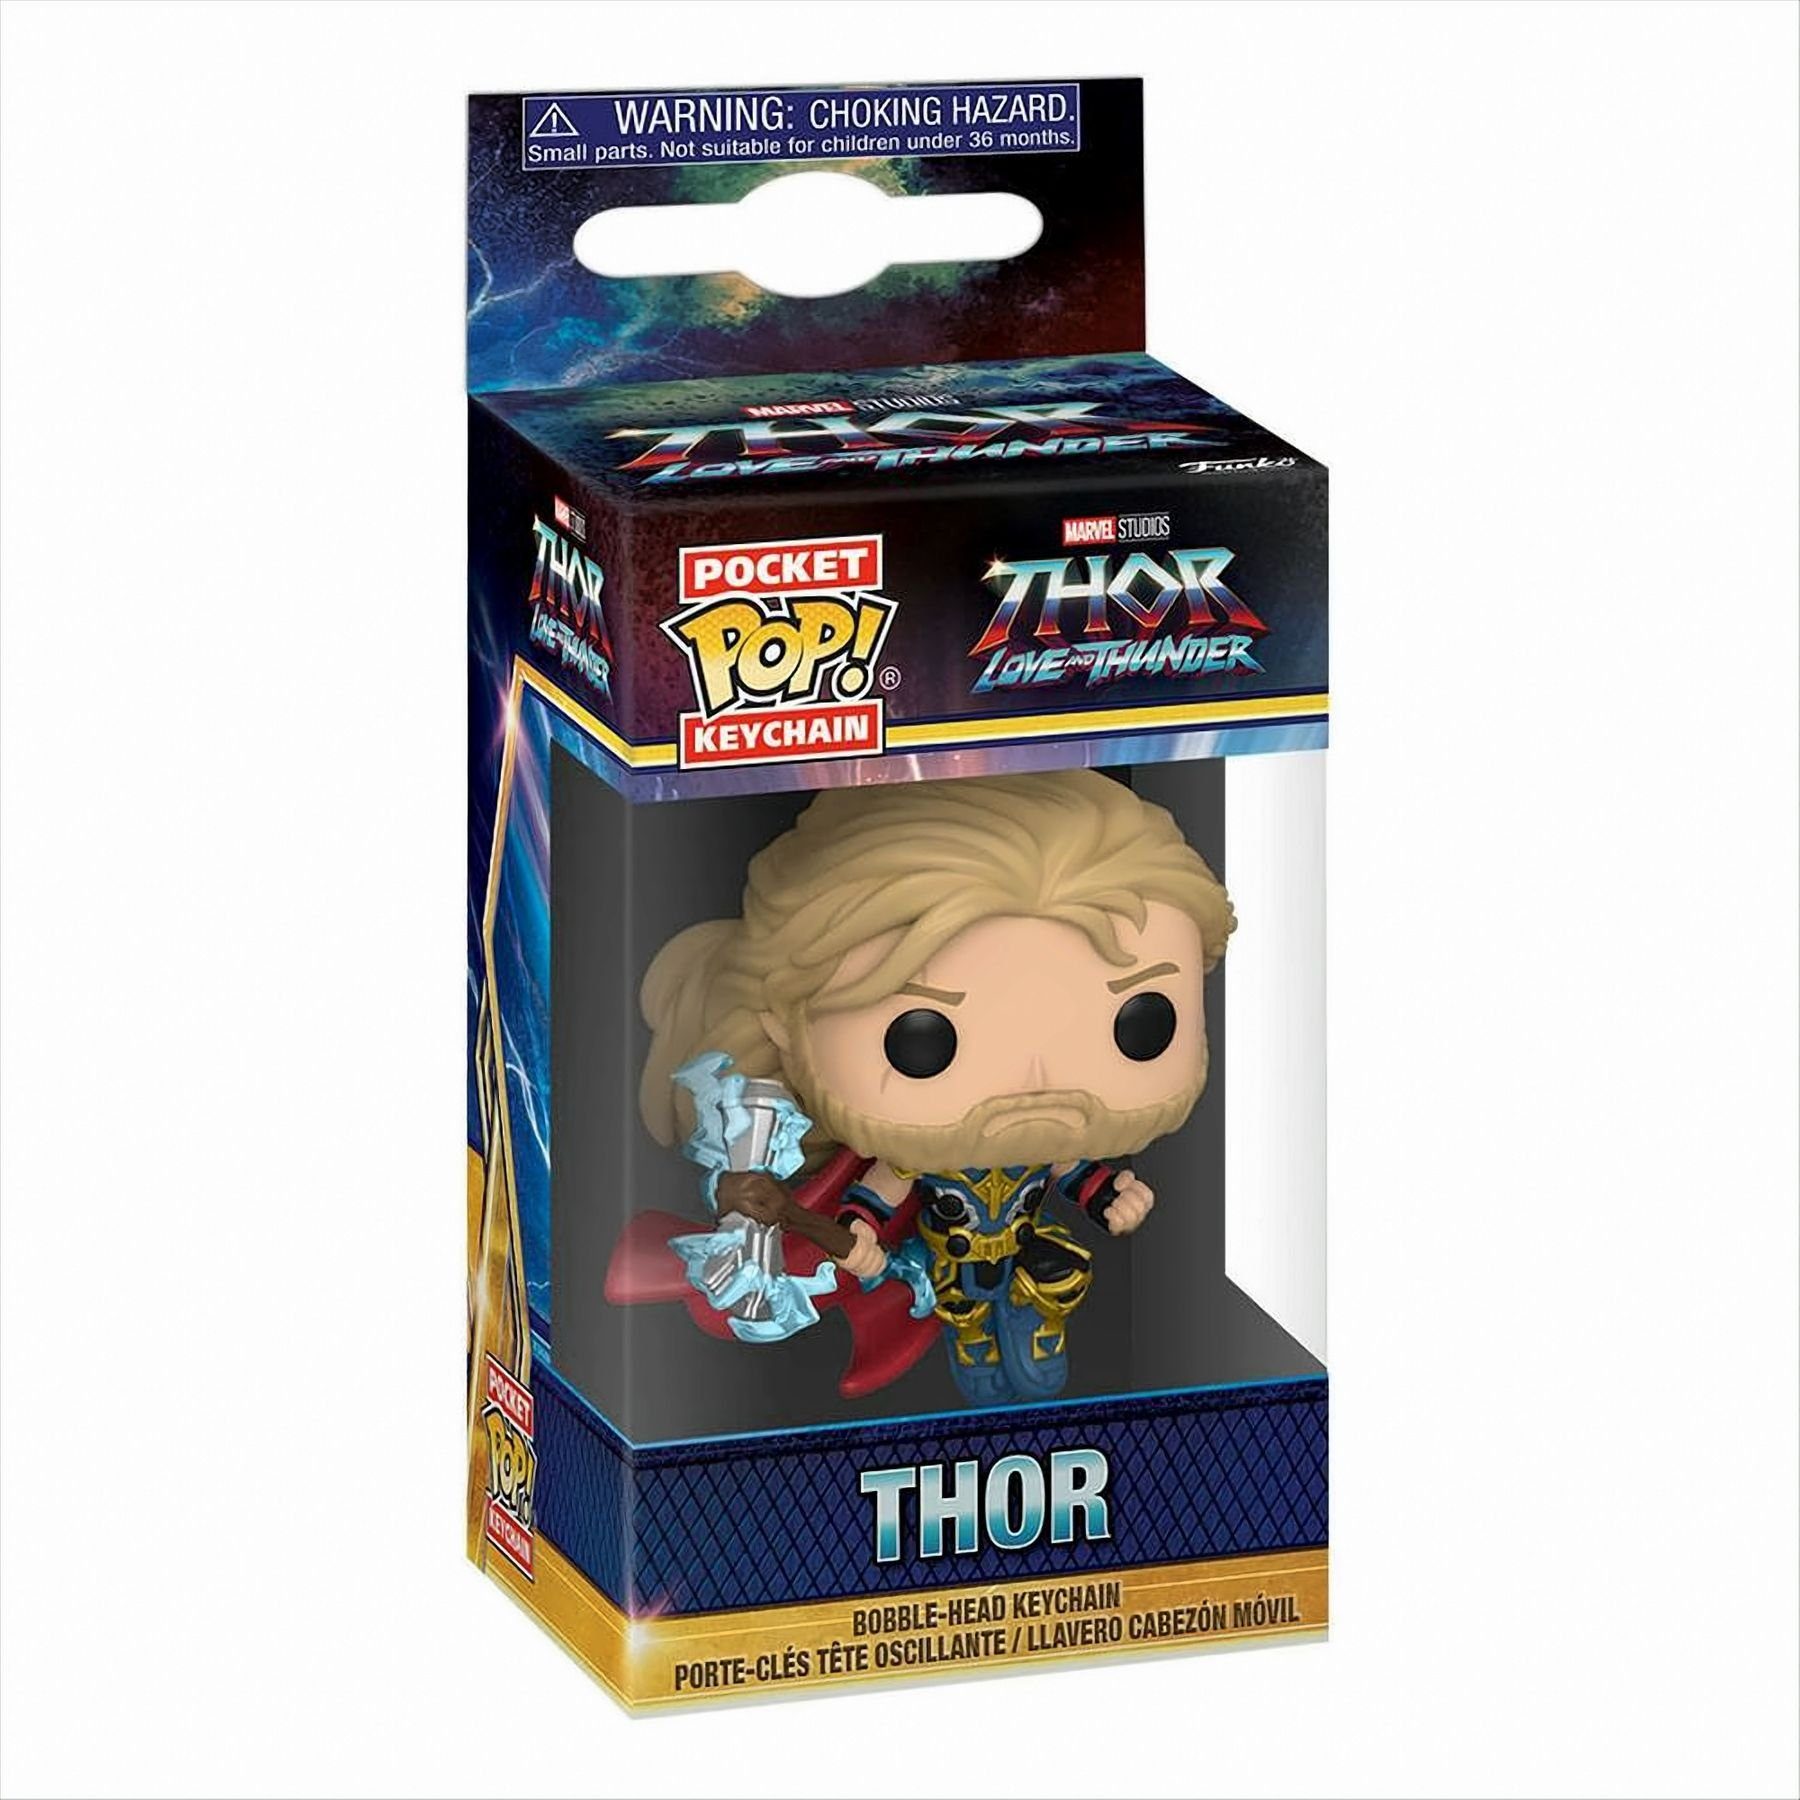 Love Thor: Spielfigur Keychain Thor POP Funko - and Thunder